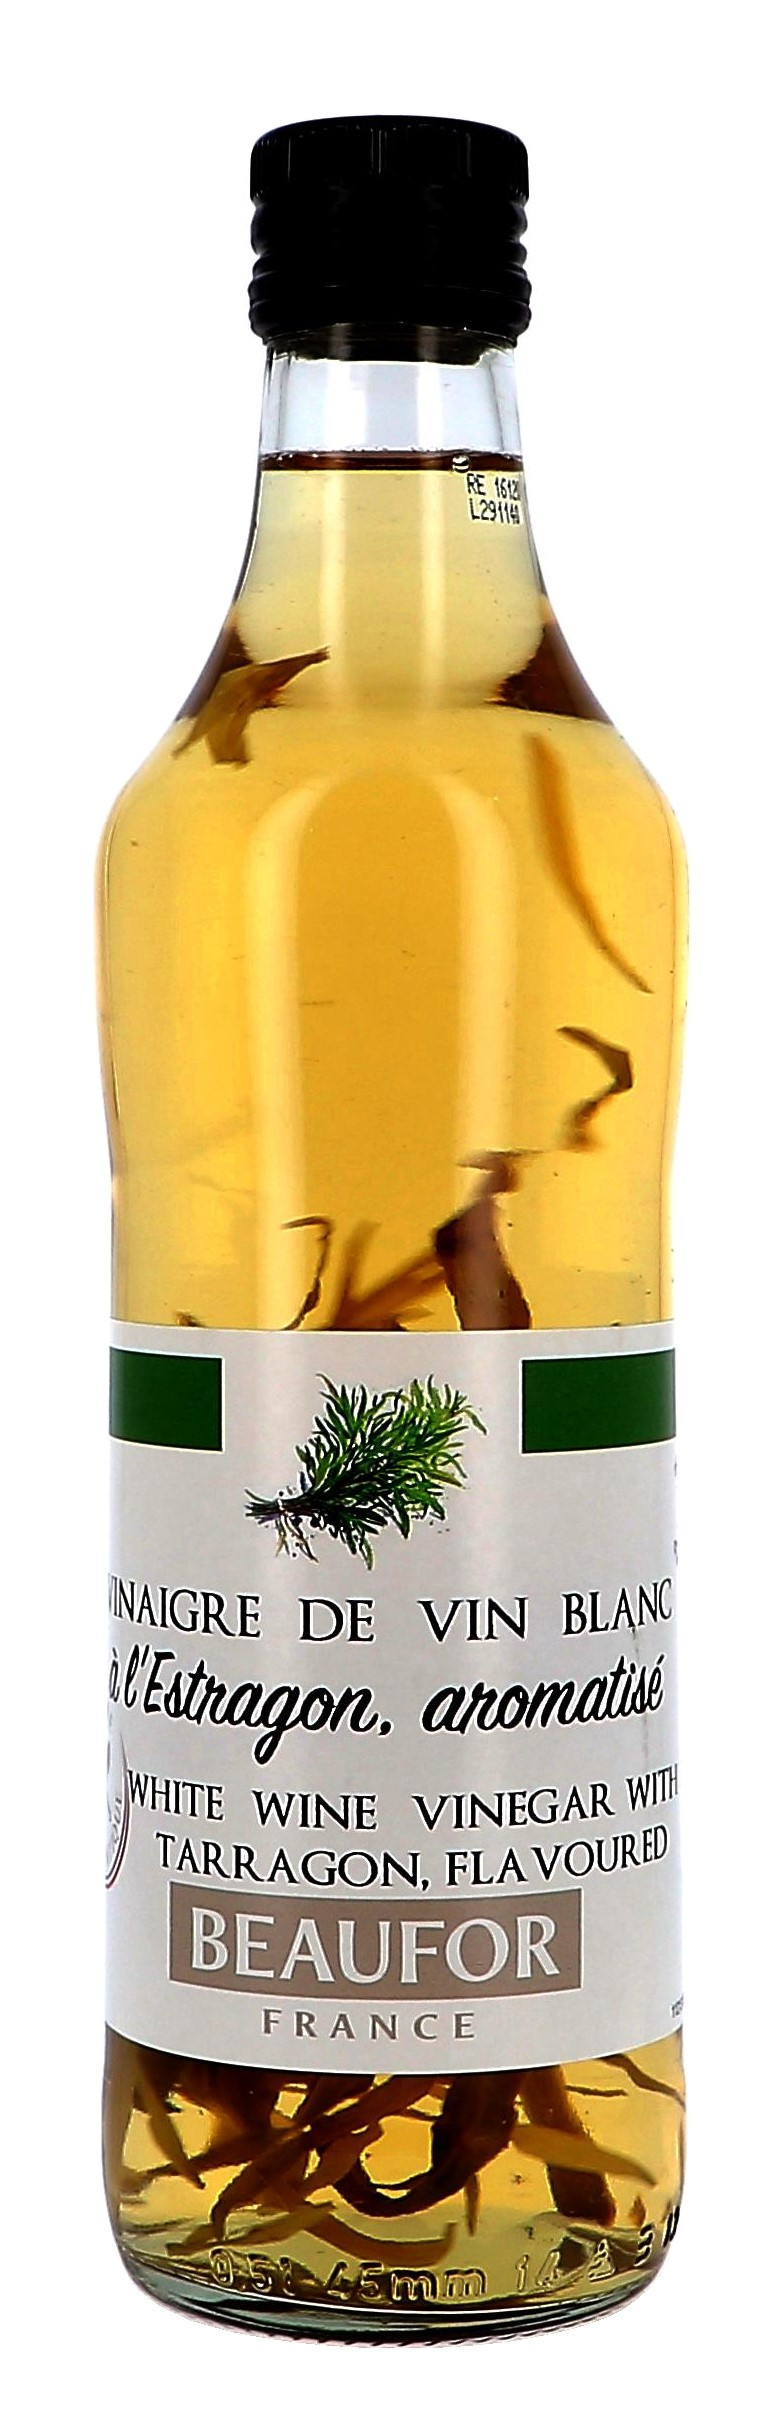 Vinaigre de vin blanc a l' estragon 50cl Beaufor (Default)